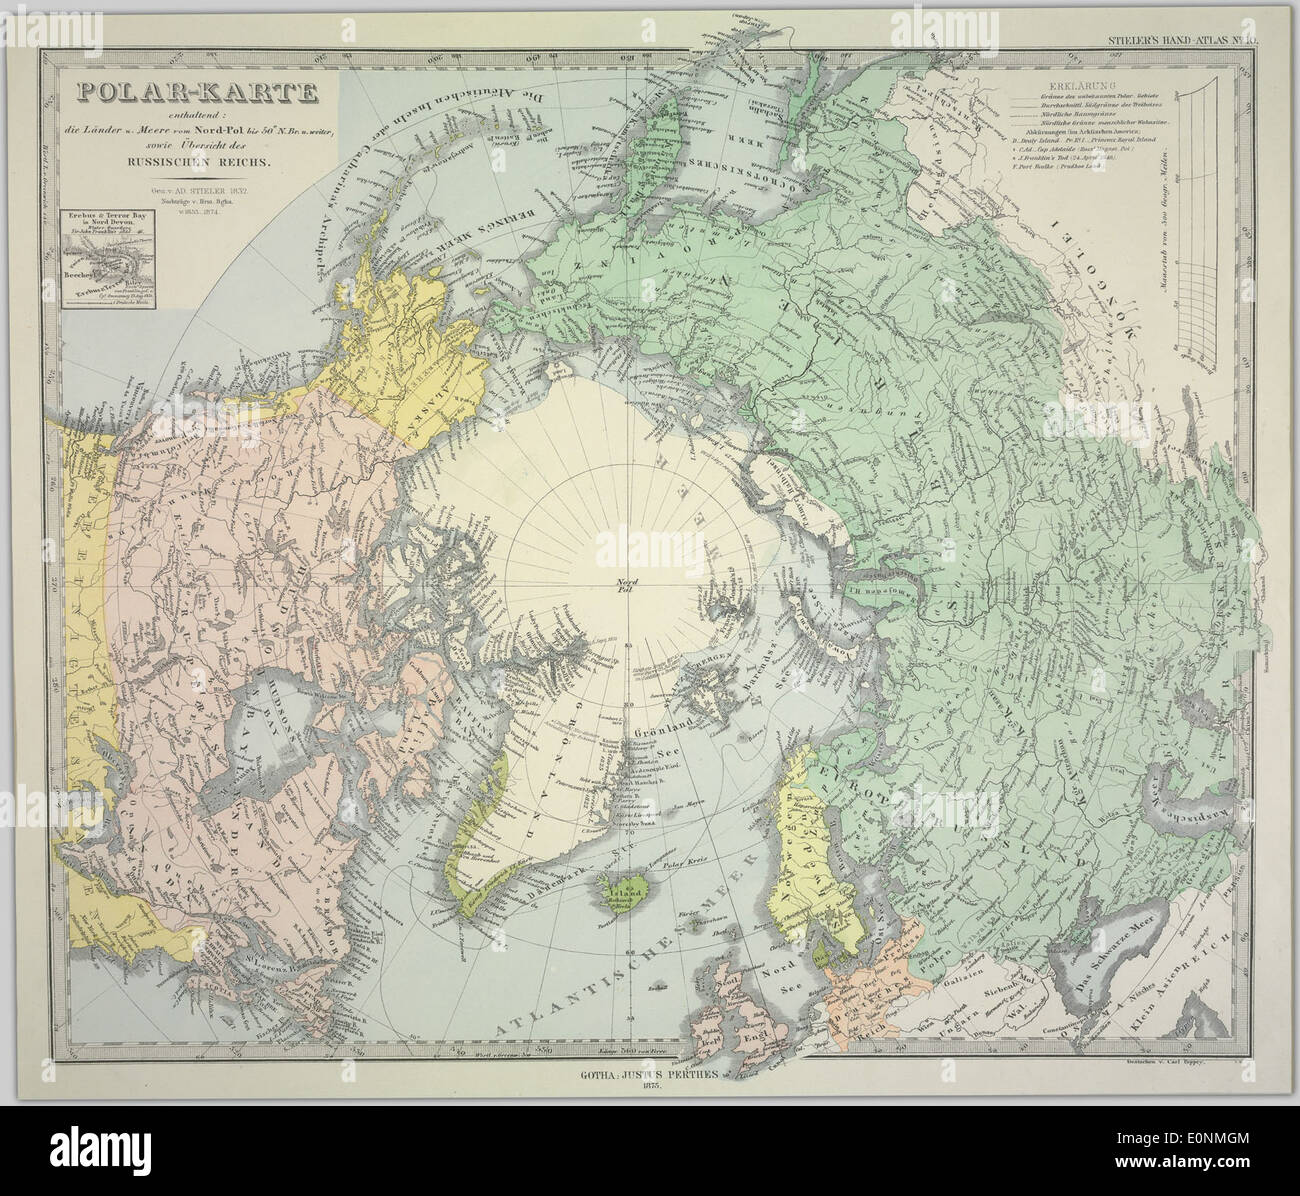 Polar-Karte enthaltend: die Länder u. Meere vom Nord-Pol bis 50 N. Br. u. weiter, sowie Übersicht des Russischen Reichs Stock Photo